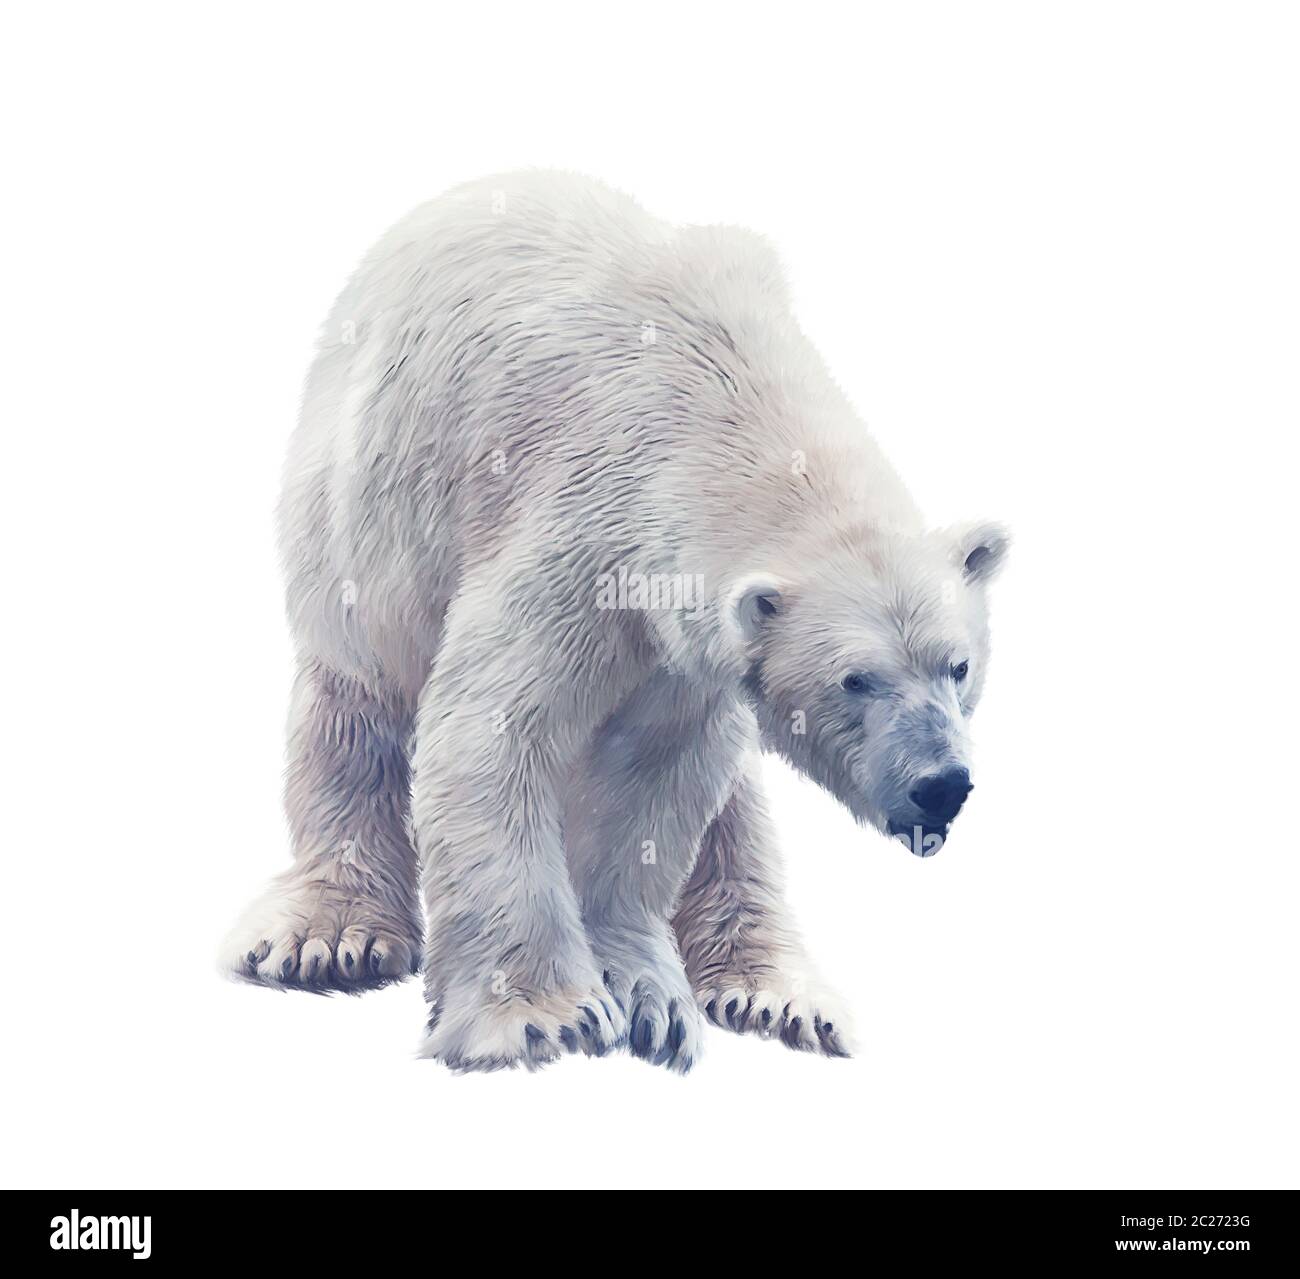 Peinture numérique de grand ours polaire isolé sur fond blanc. Banque D'Images